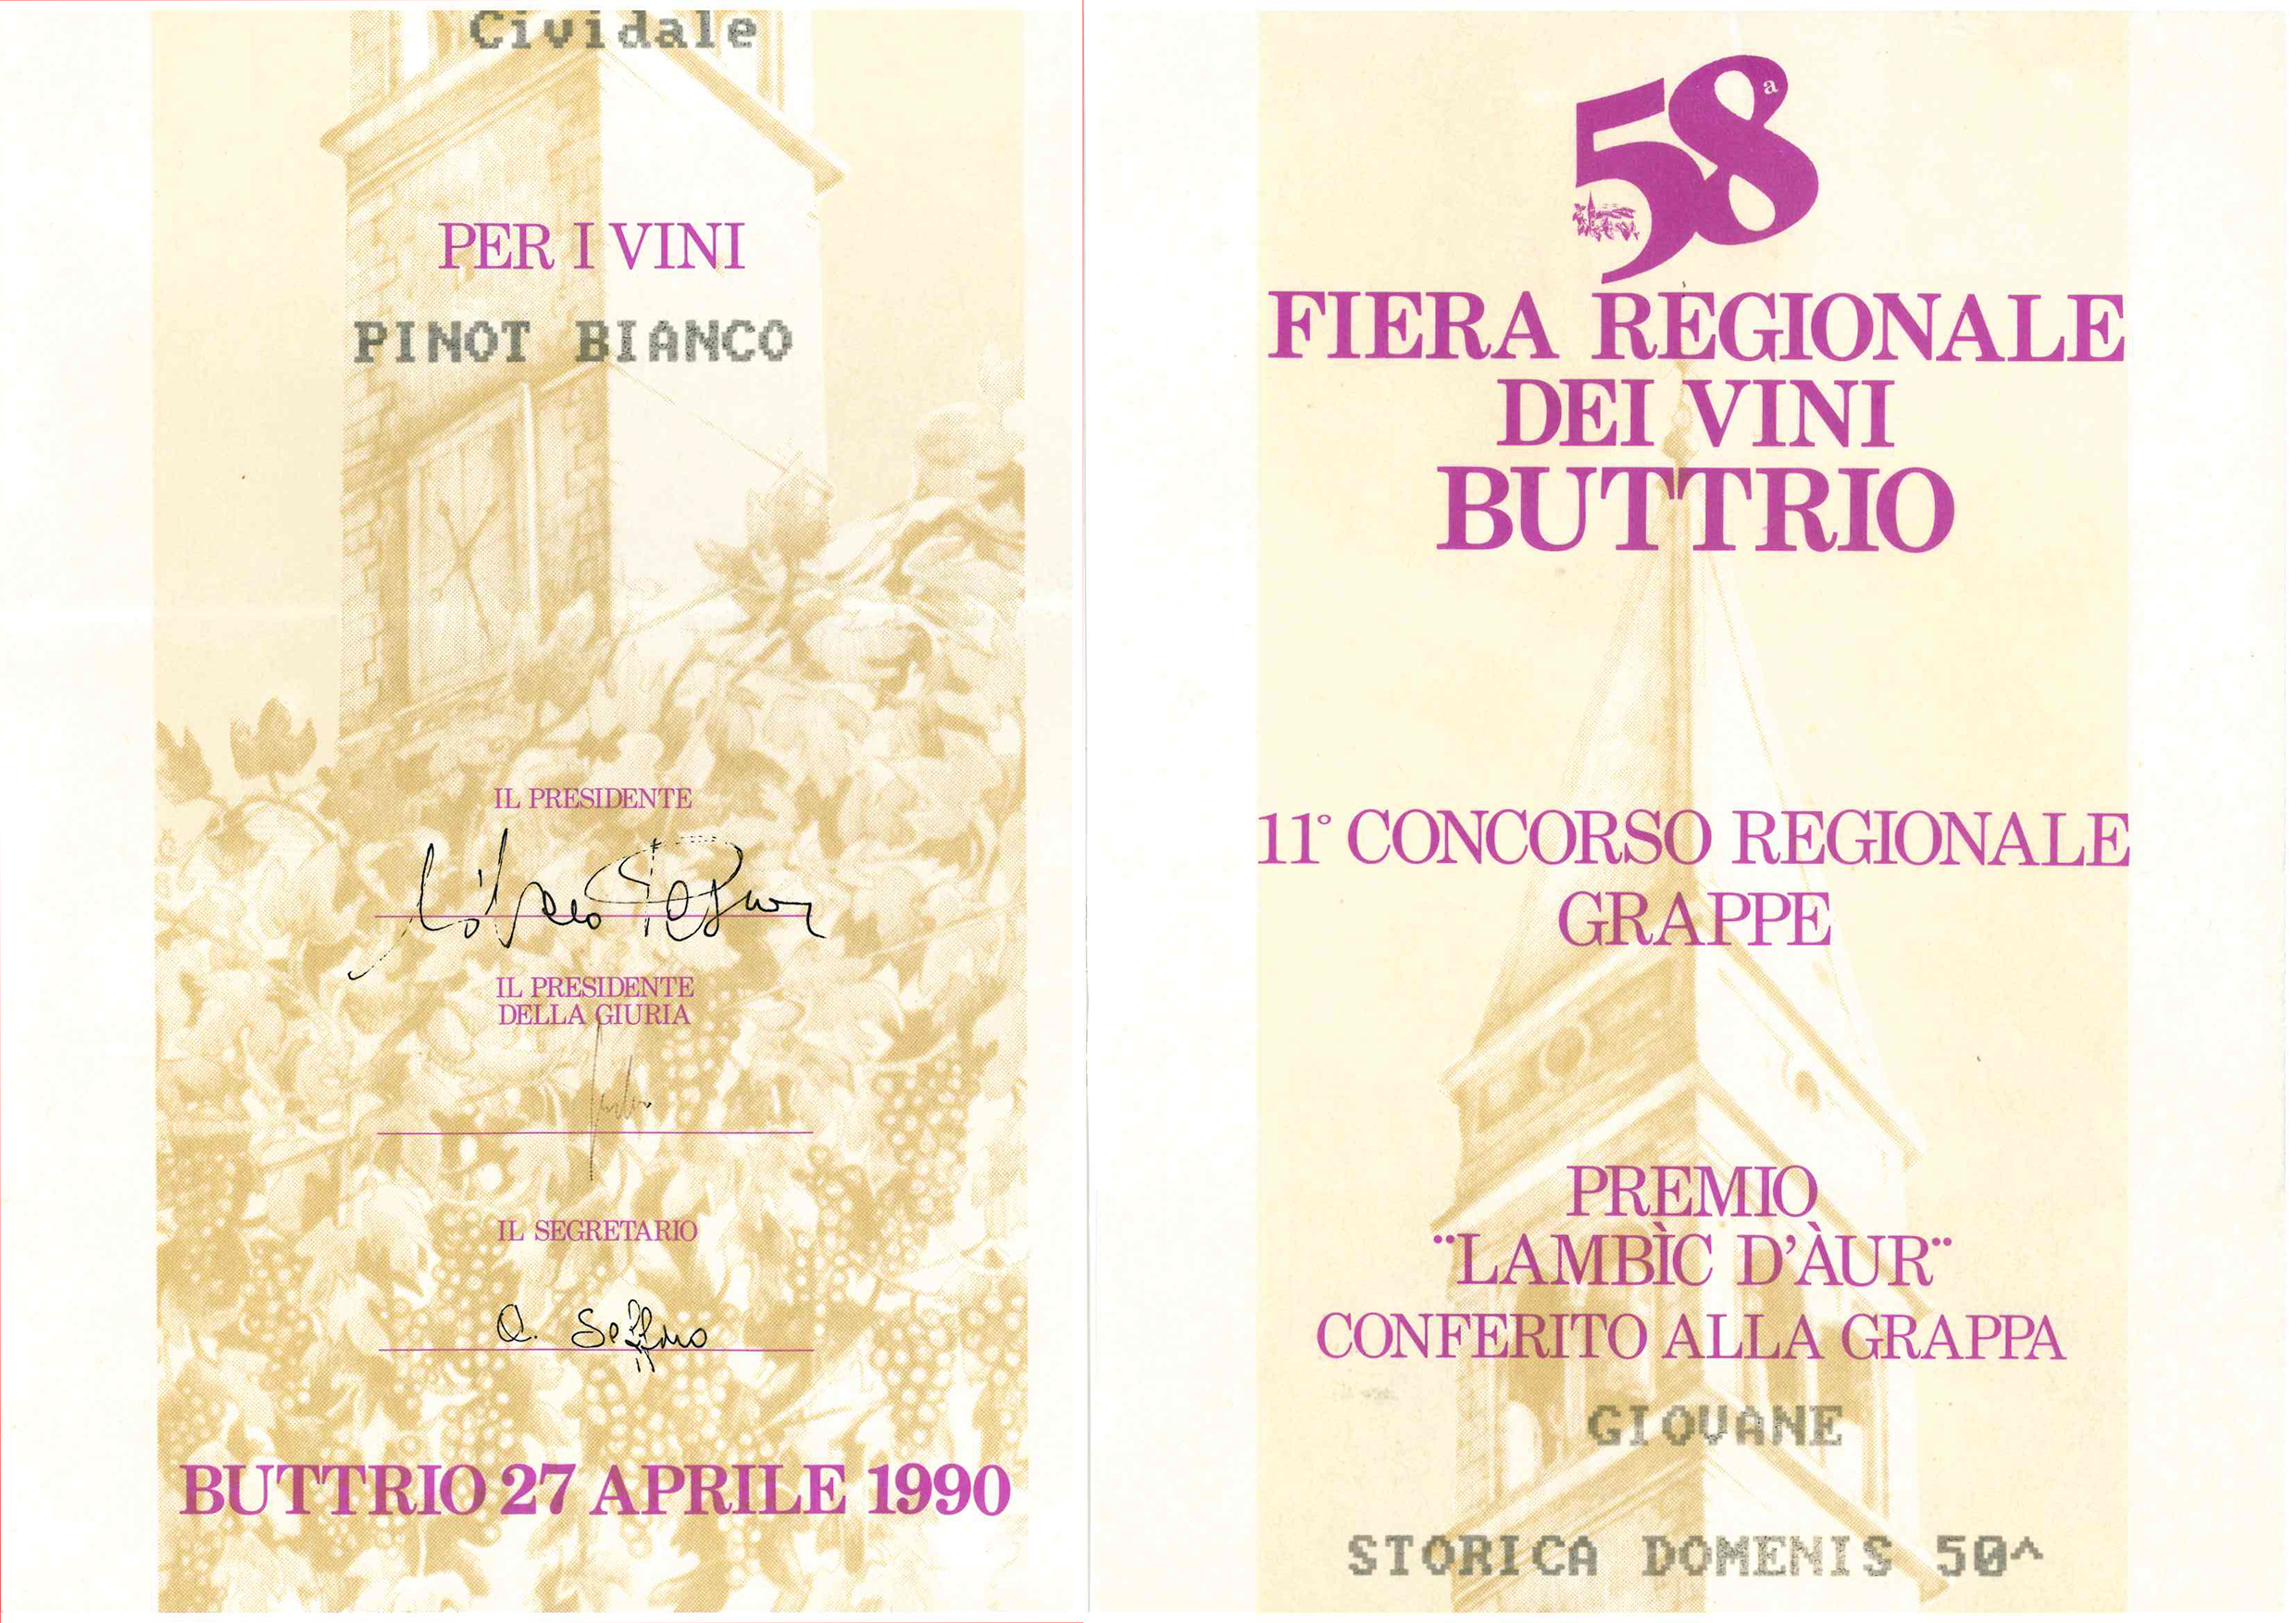 Fiera Regionale dei Vini di Buttrio 1990 – Grappa giovane Storica Domenis 50° e Pinot bianco